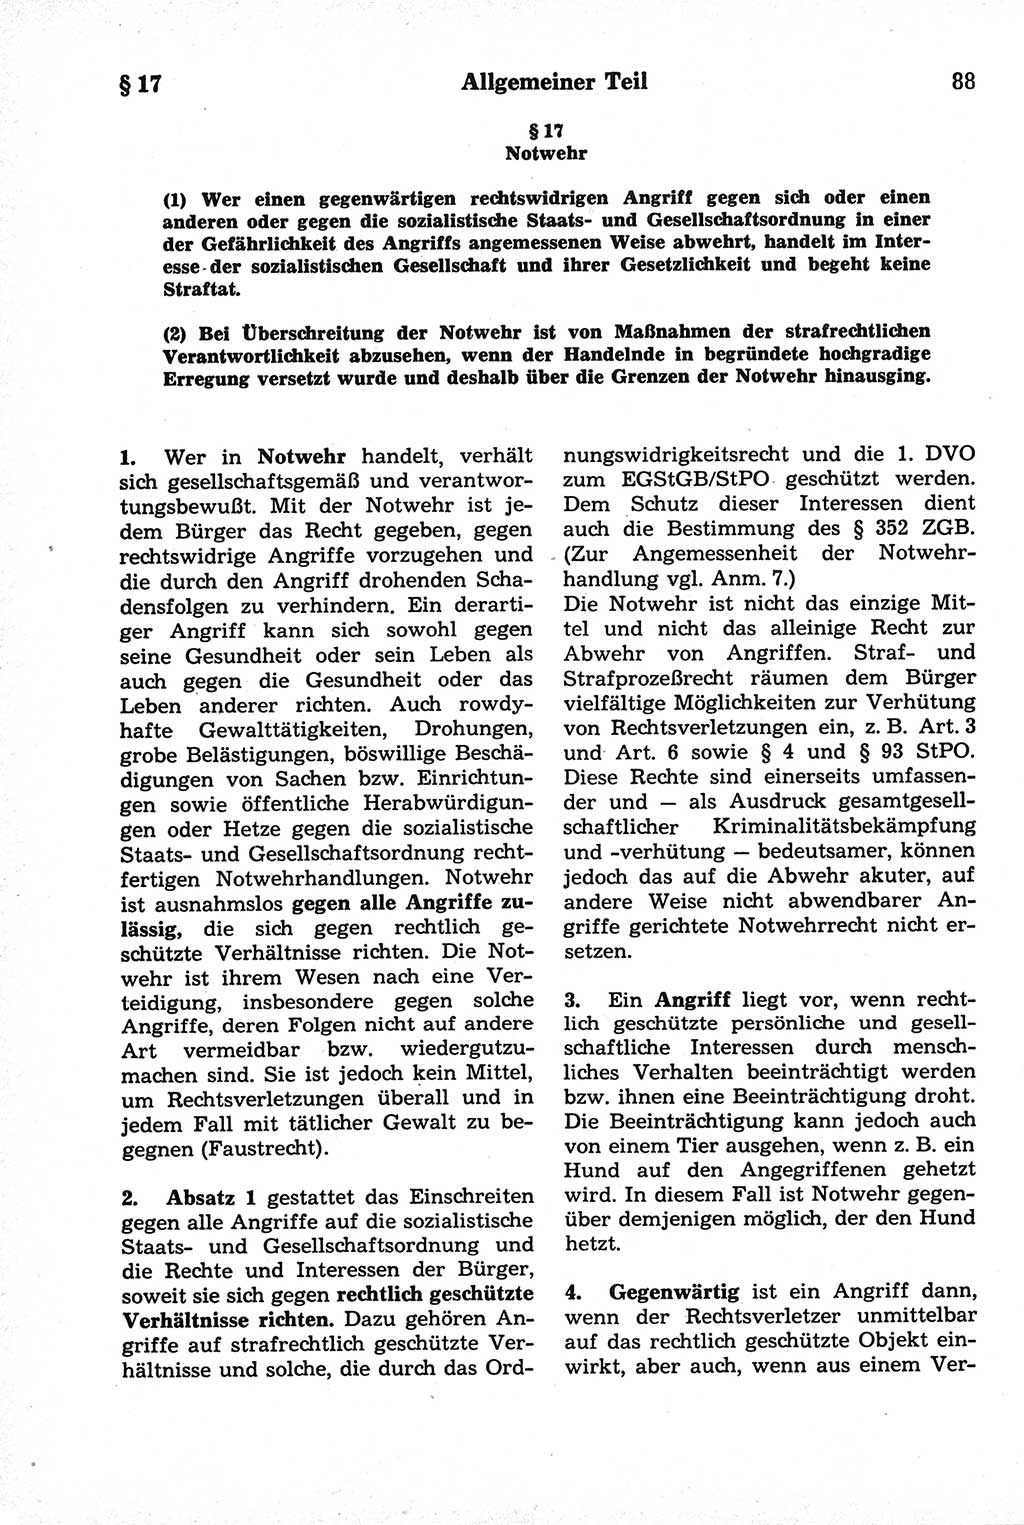 Strafrecht der Deutschen Demokratischen Republik (DDR), Kommentar zum Strafgesetzbuch (StGB) 1981, Seite 88 (Strafr. DDR Komm. StGB 1981, S. 88)